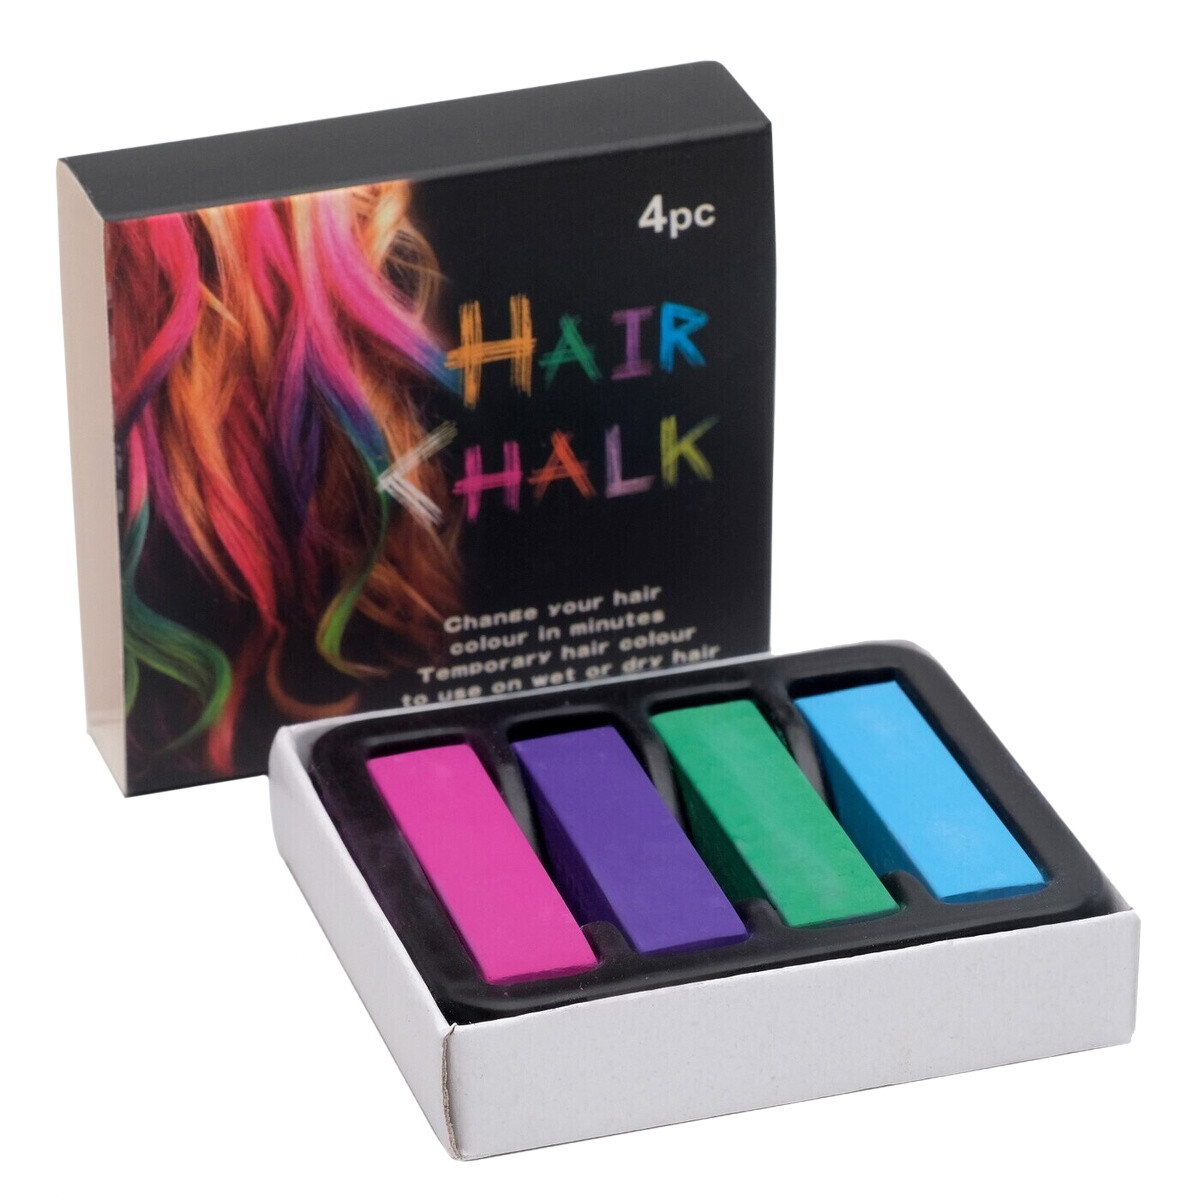 Цветные мелки для волос HairChalkin, набор 4 штук о младенцах преждевременно похищаемых смертью